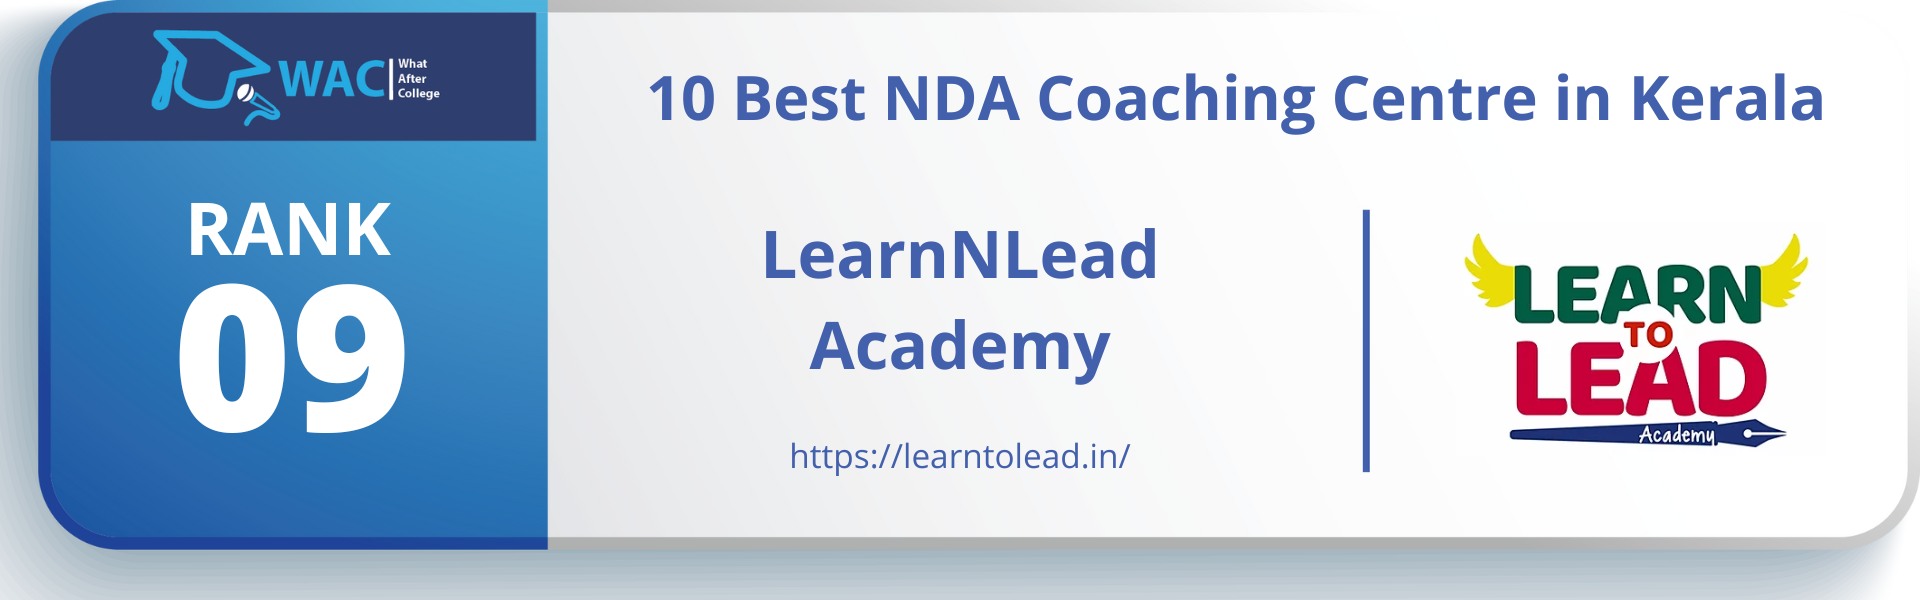 LearnNLead Academy